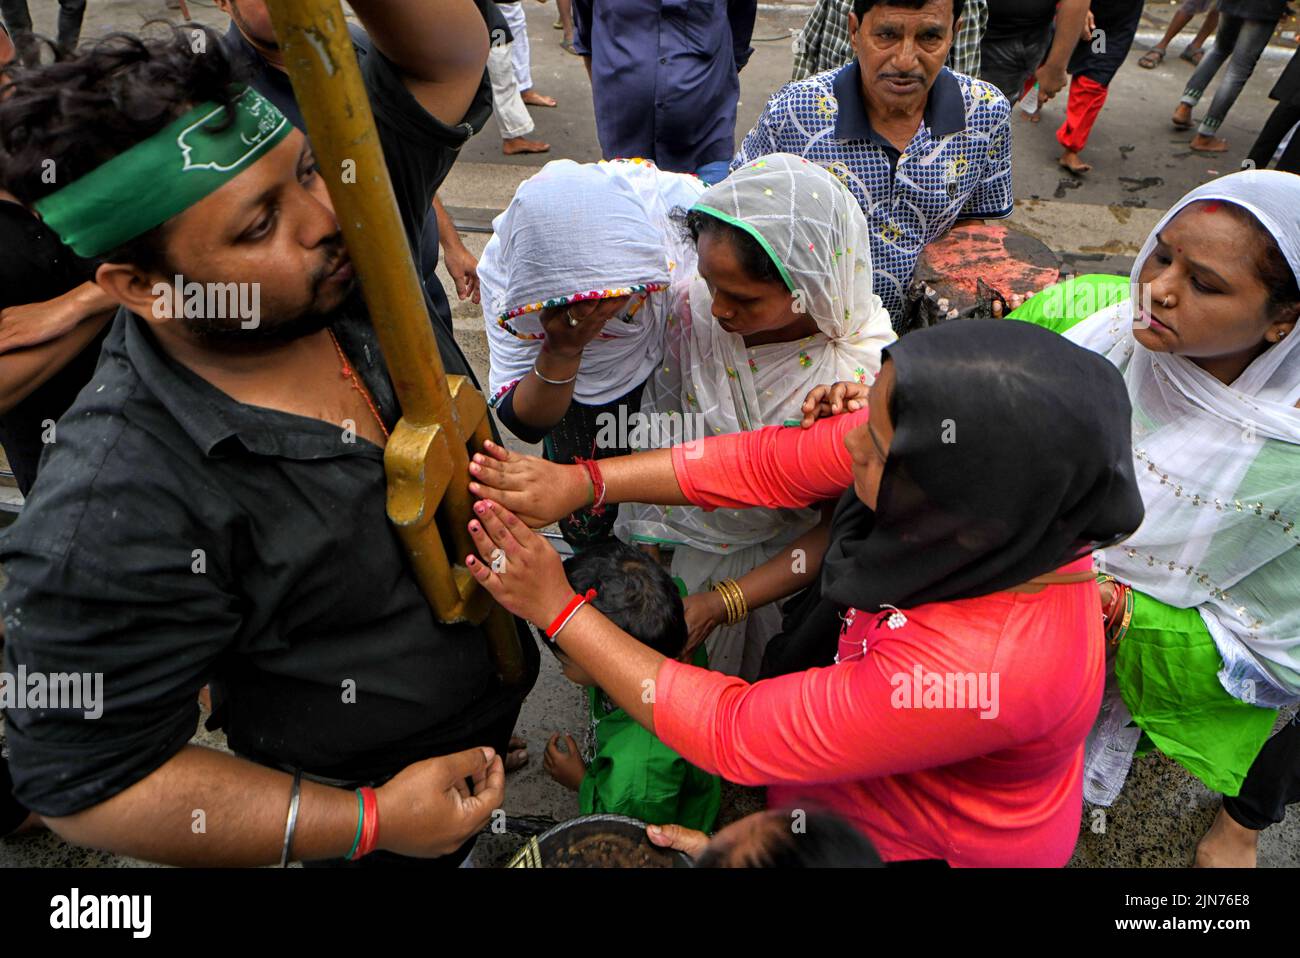 Los devotos musulmanes reciben bendiciones de la santa Tazia durante la procesión de Muharram en Kolkata. Muharram es el primer mes del calendario islámico y Ashura es el décimo día del mes de Muharram en el que se celebra la conmemoración del martirio del imán Hussain, nieto del profeta Mahoma (PBUH), durante la batalla de Karbala. Es parte del duelo por los musulmanes chiítas y un día de ayuno para los musulmanes sunitas que se observa en todo el mundo. Foto de stock